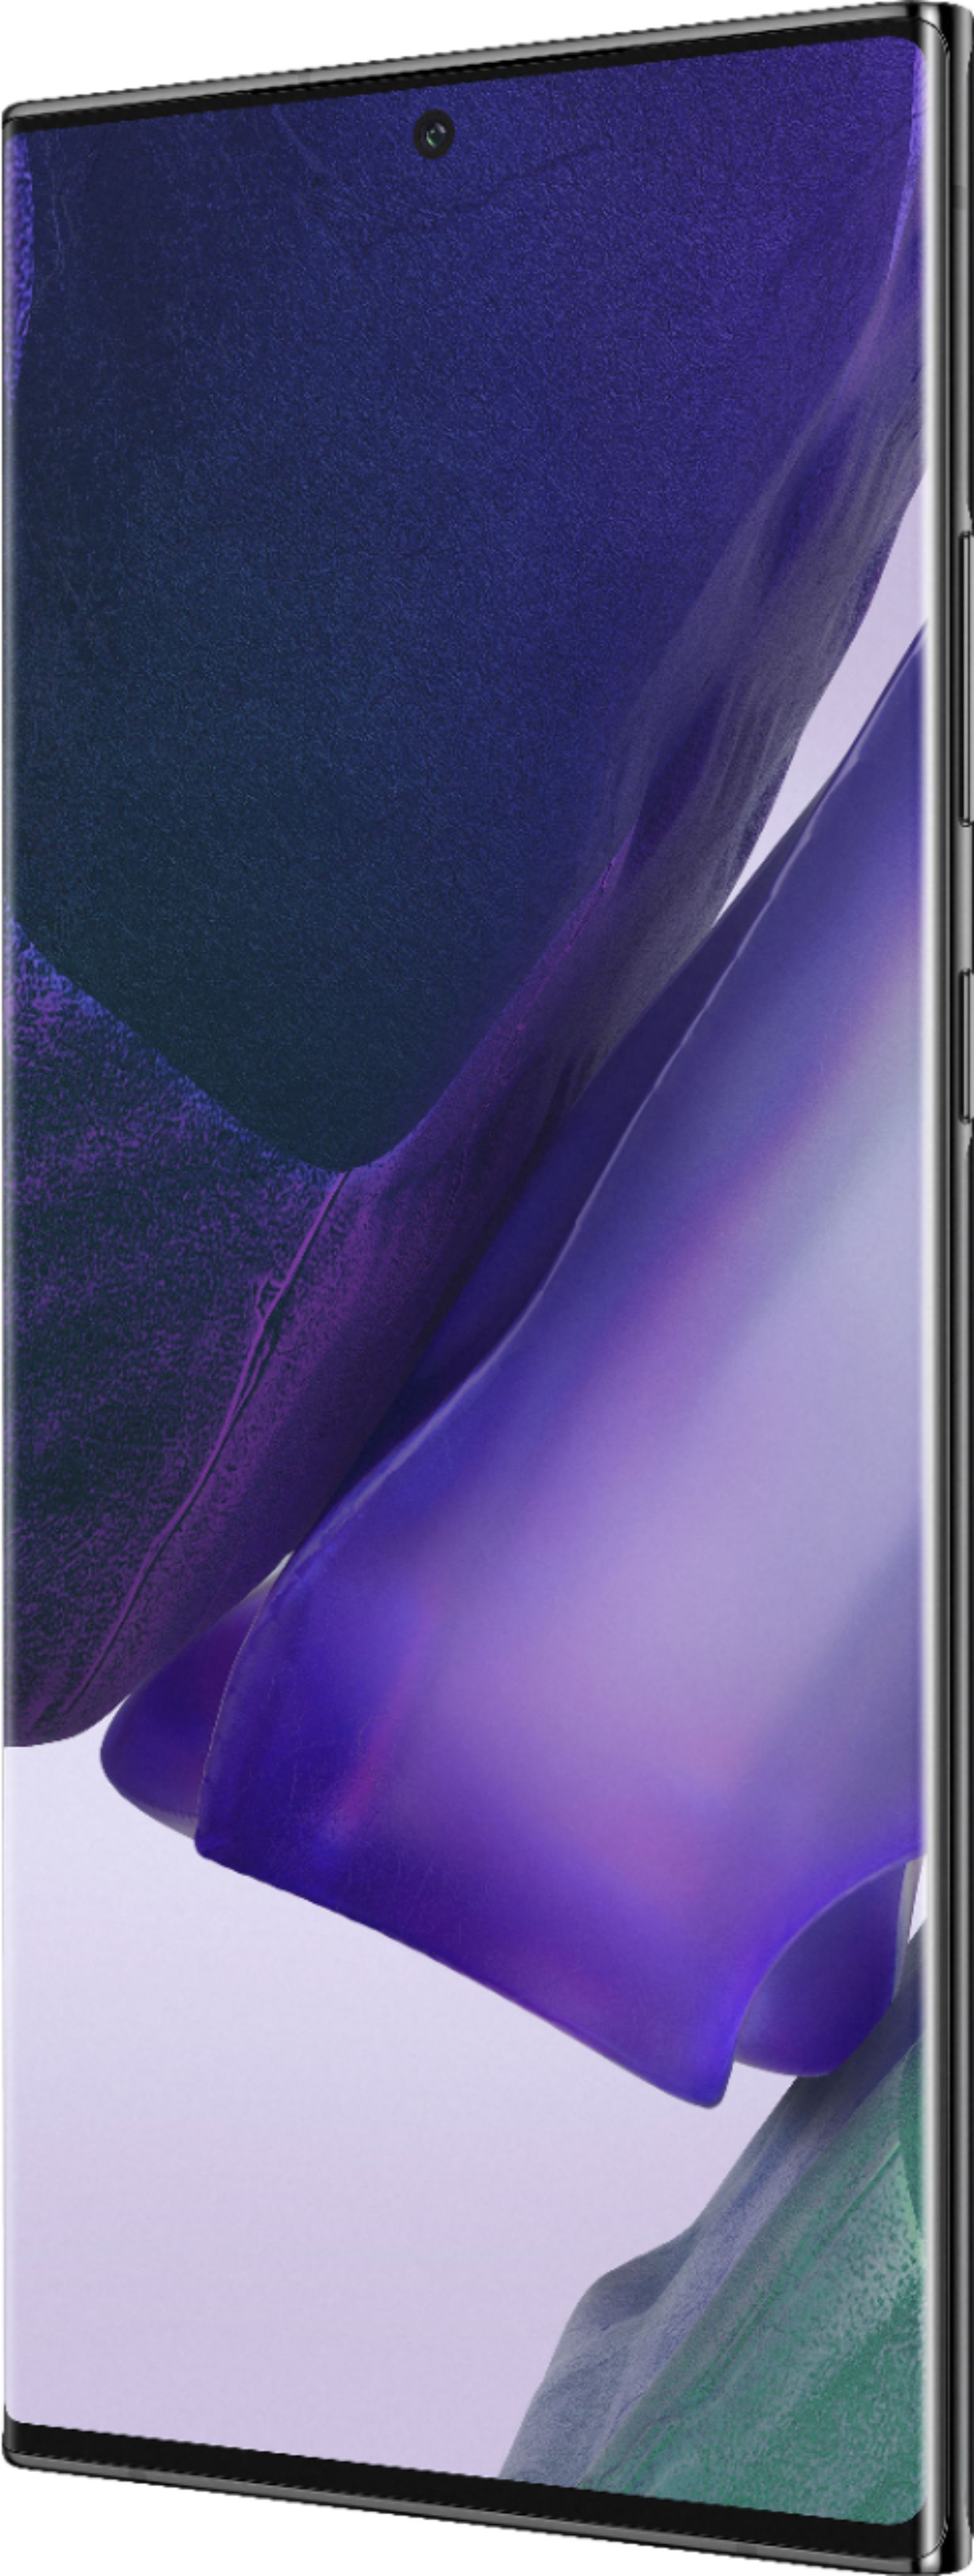 Samsung Galaxy Note20 Ultra 5G SM-N986U1 - 128GB - Mystic Black (Unlocked)